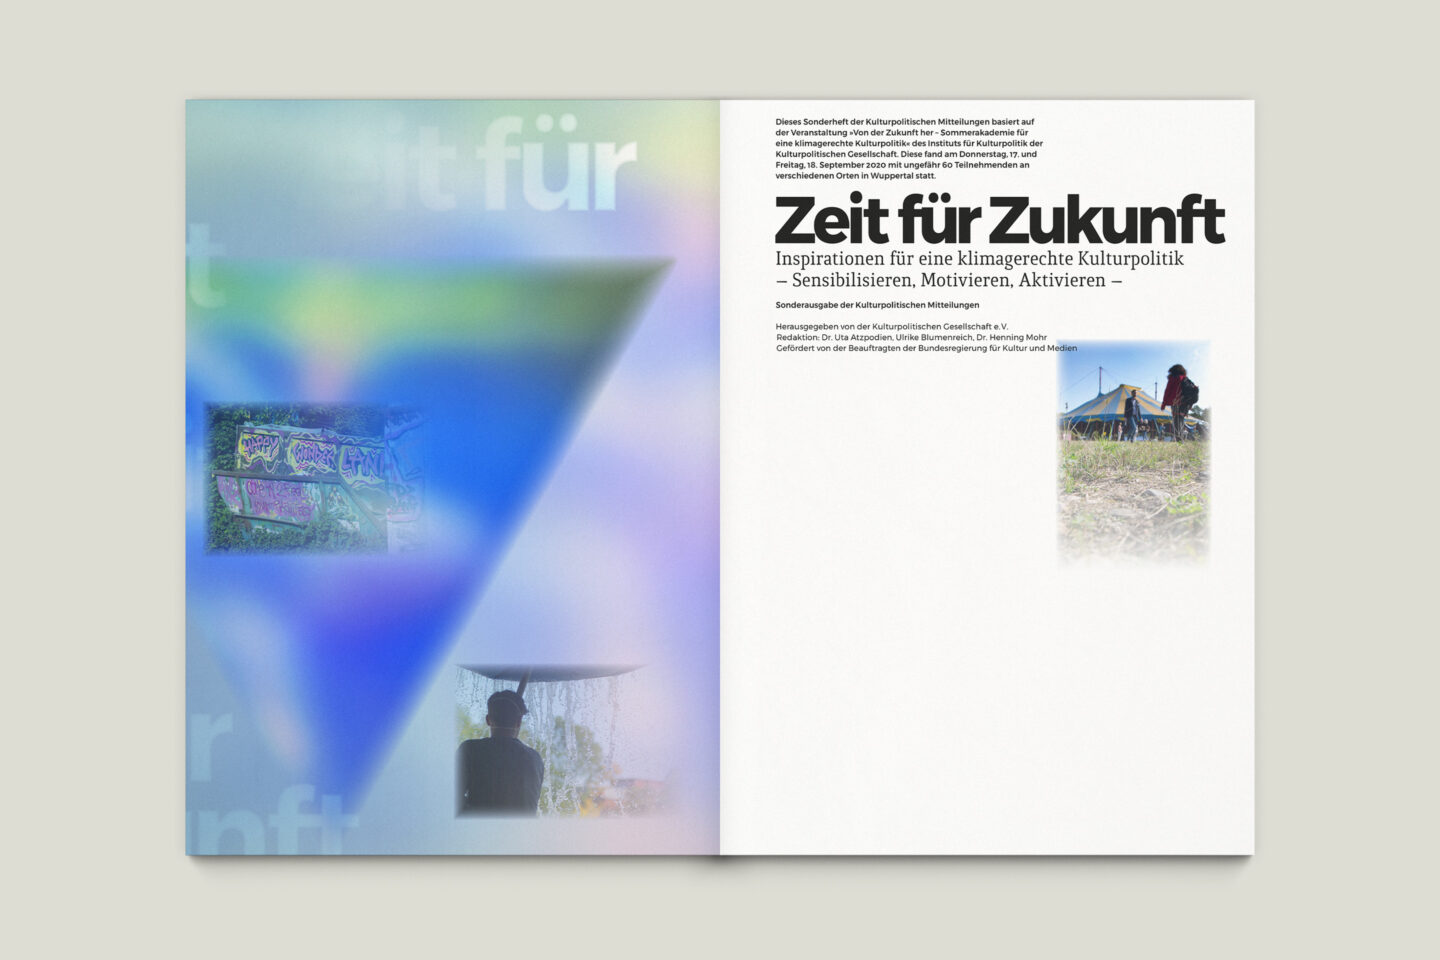 Büro Gestalten: Zeit für Zukunft – Sonderpublikation der Kulturpolitischen Gesellschaft Bonn anlässlich der gleichnamigen Summerschool 2020, U2 + S. 1